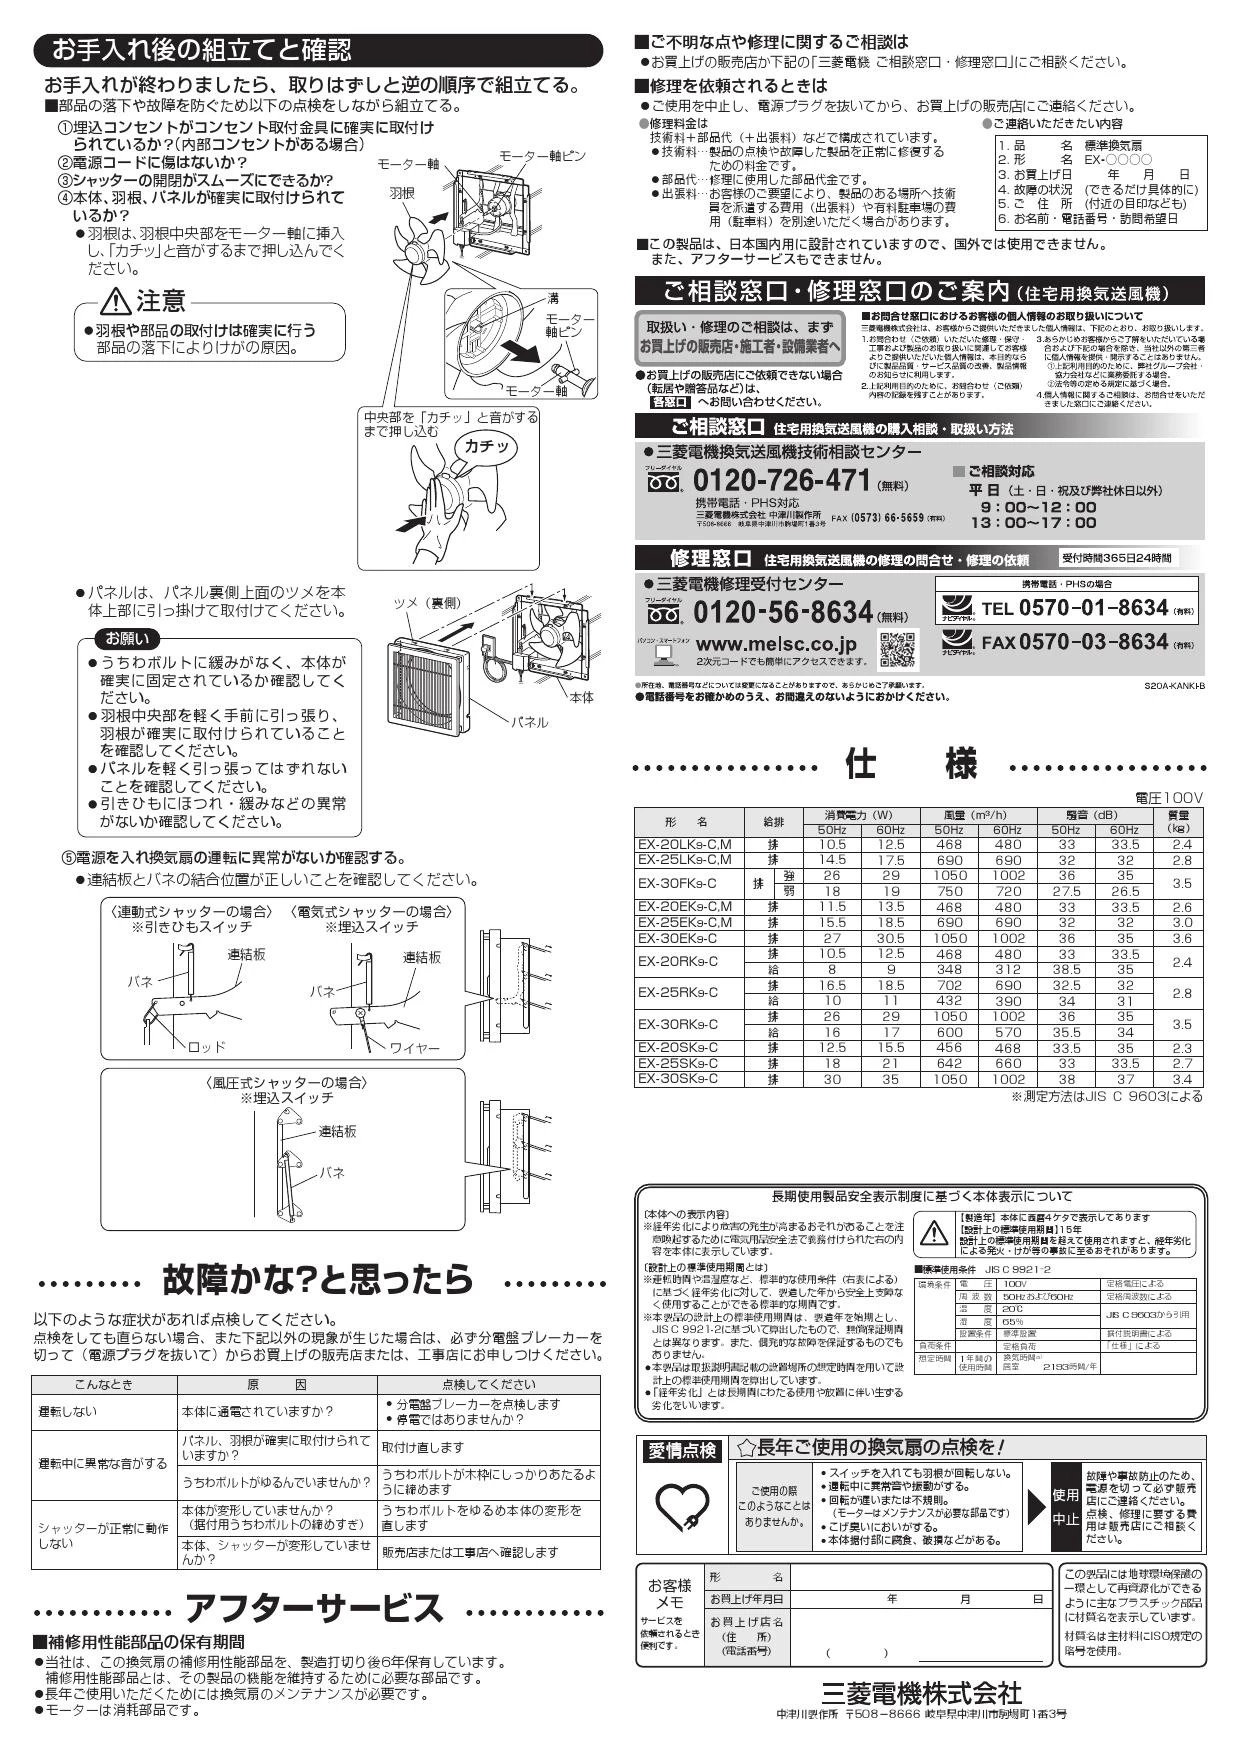 三菱電機 EX-25RK9-C 取扱説明書 施工説明書 納入仕様図|三菱電機 居間 